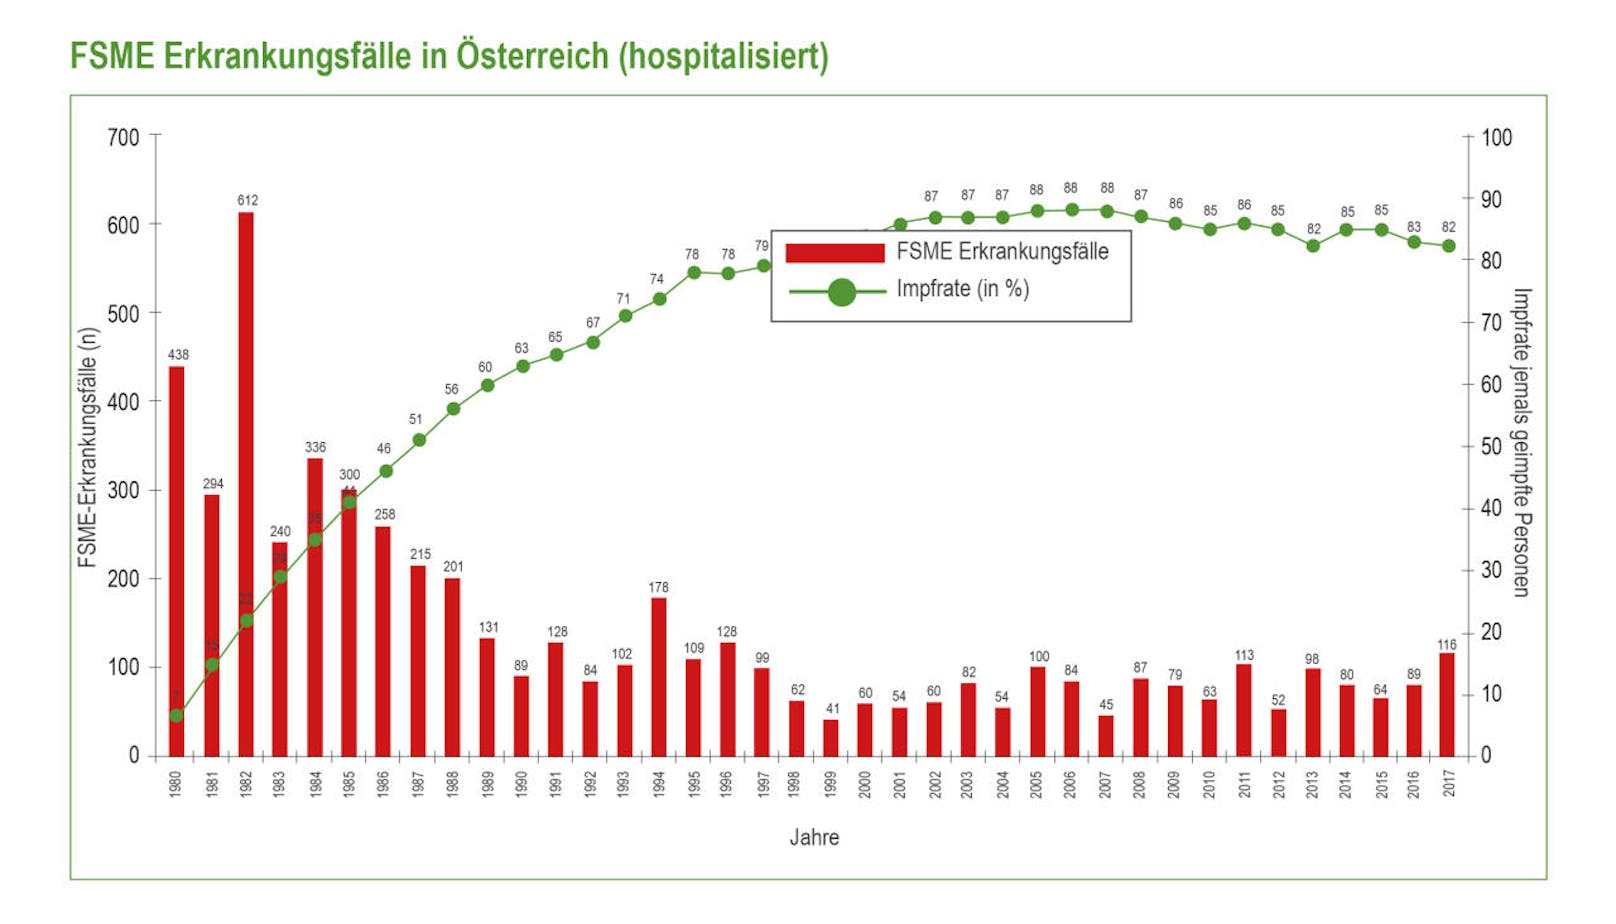 Hospitalisierte FSME-Erkrankungsfälle in Österreich 2017.